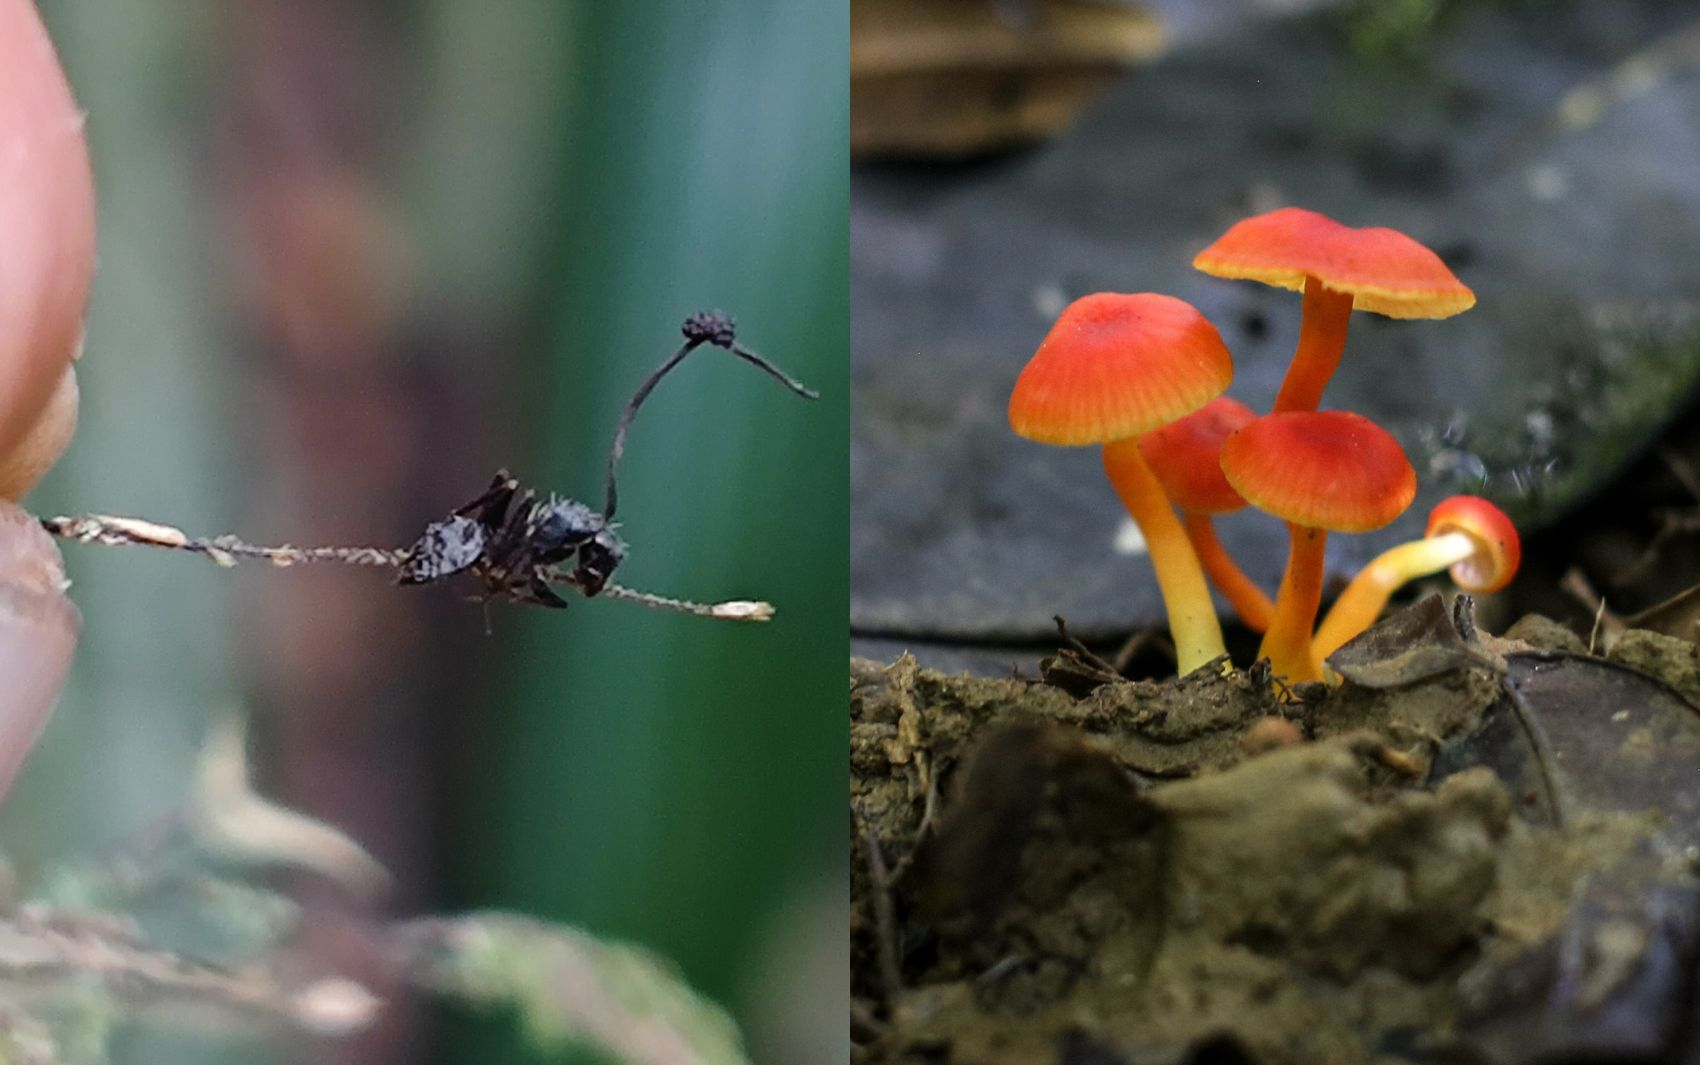 Turismo de fungos na Bahia: conheça
as novas trilhas ecológicas e a espécie do fungo 'zumbi'